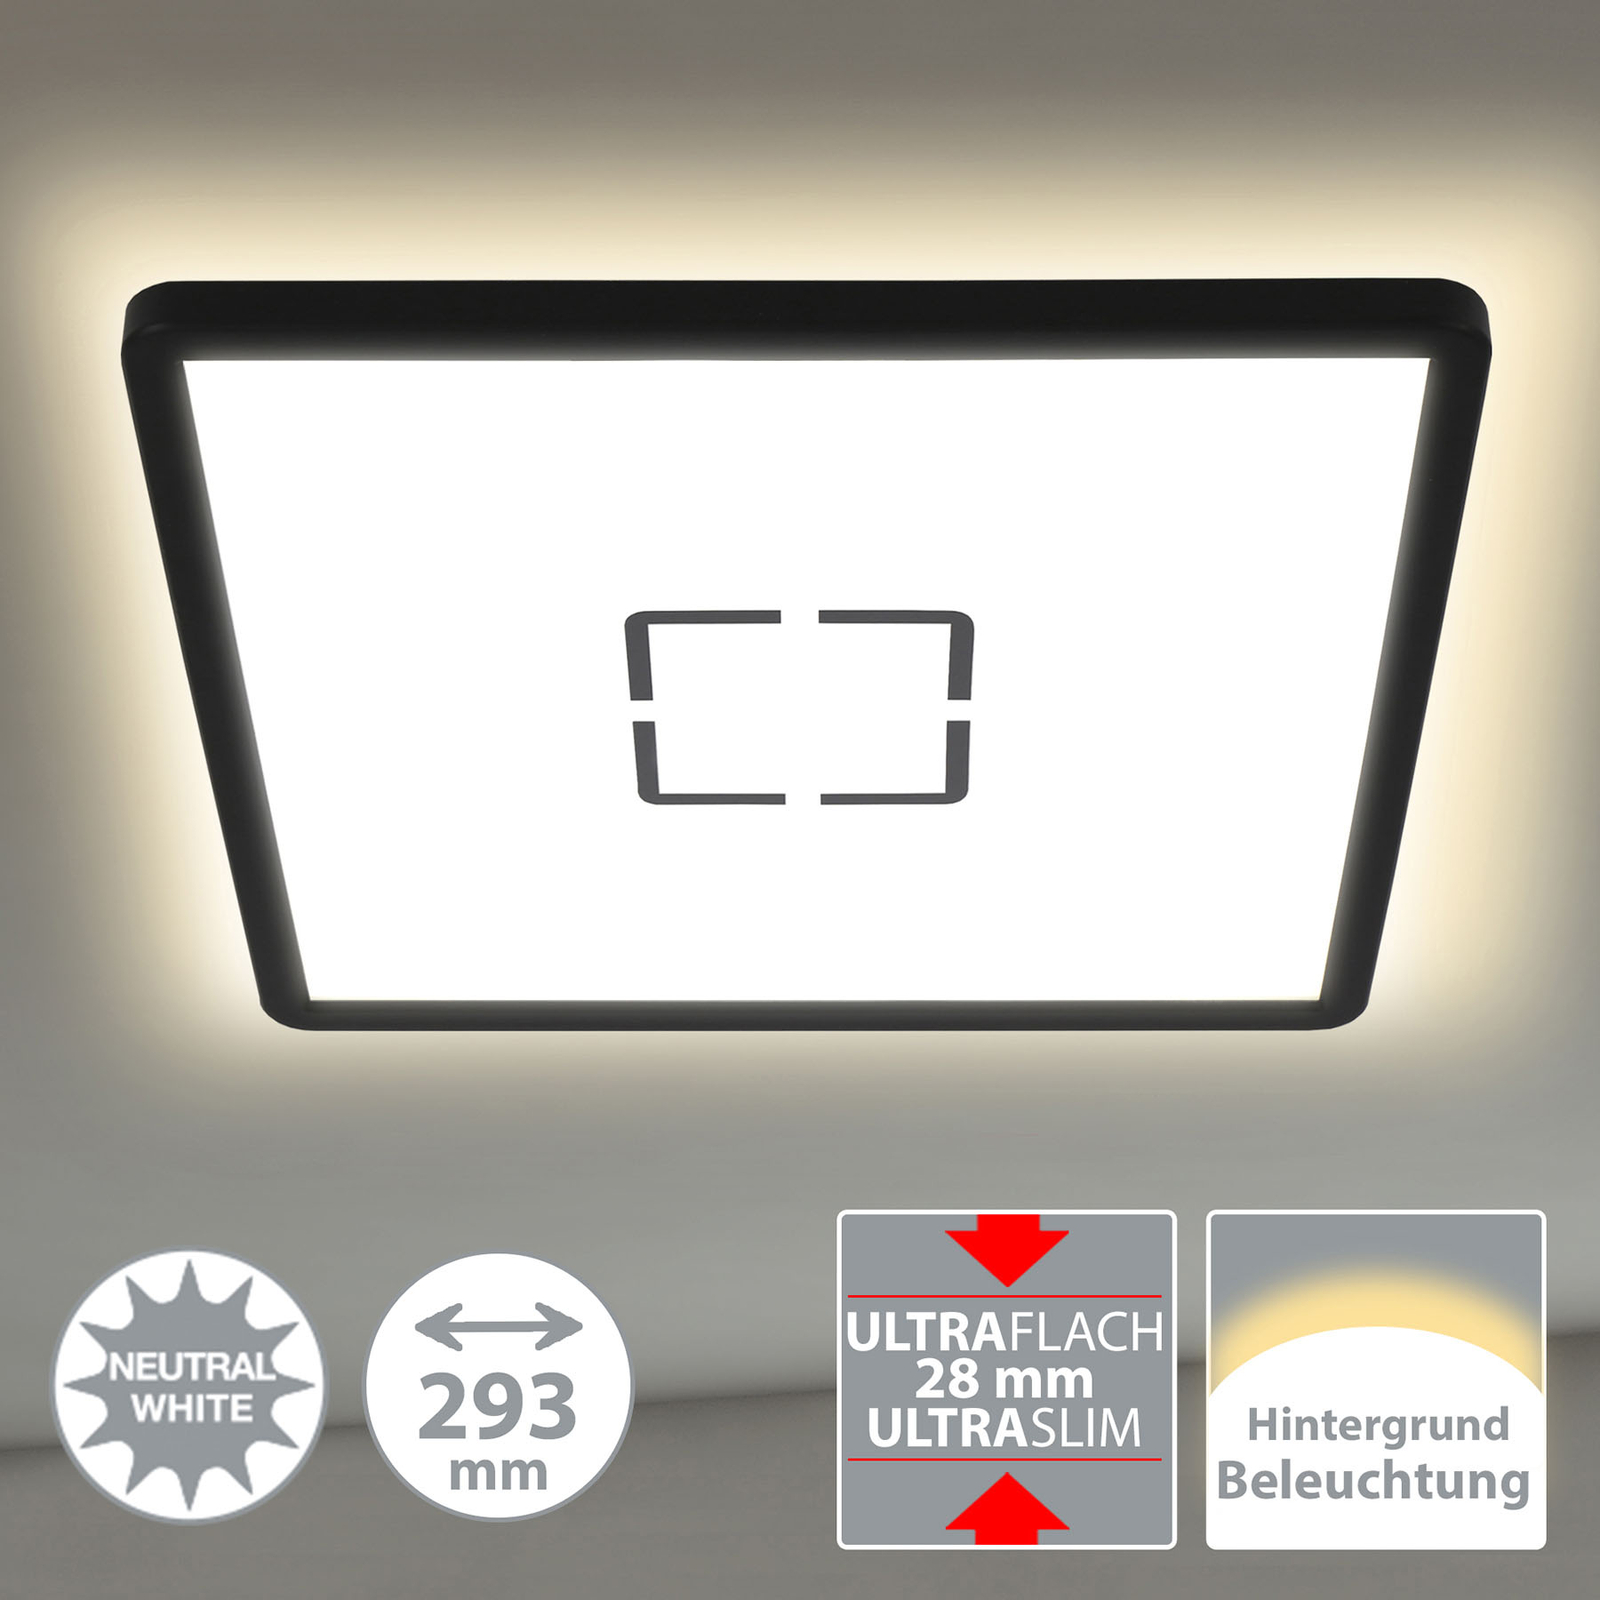 LED-taklampa Free, 29 X 29 cm, svart